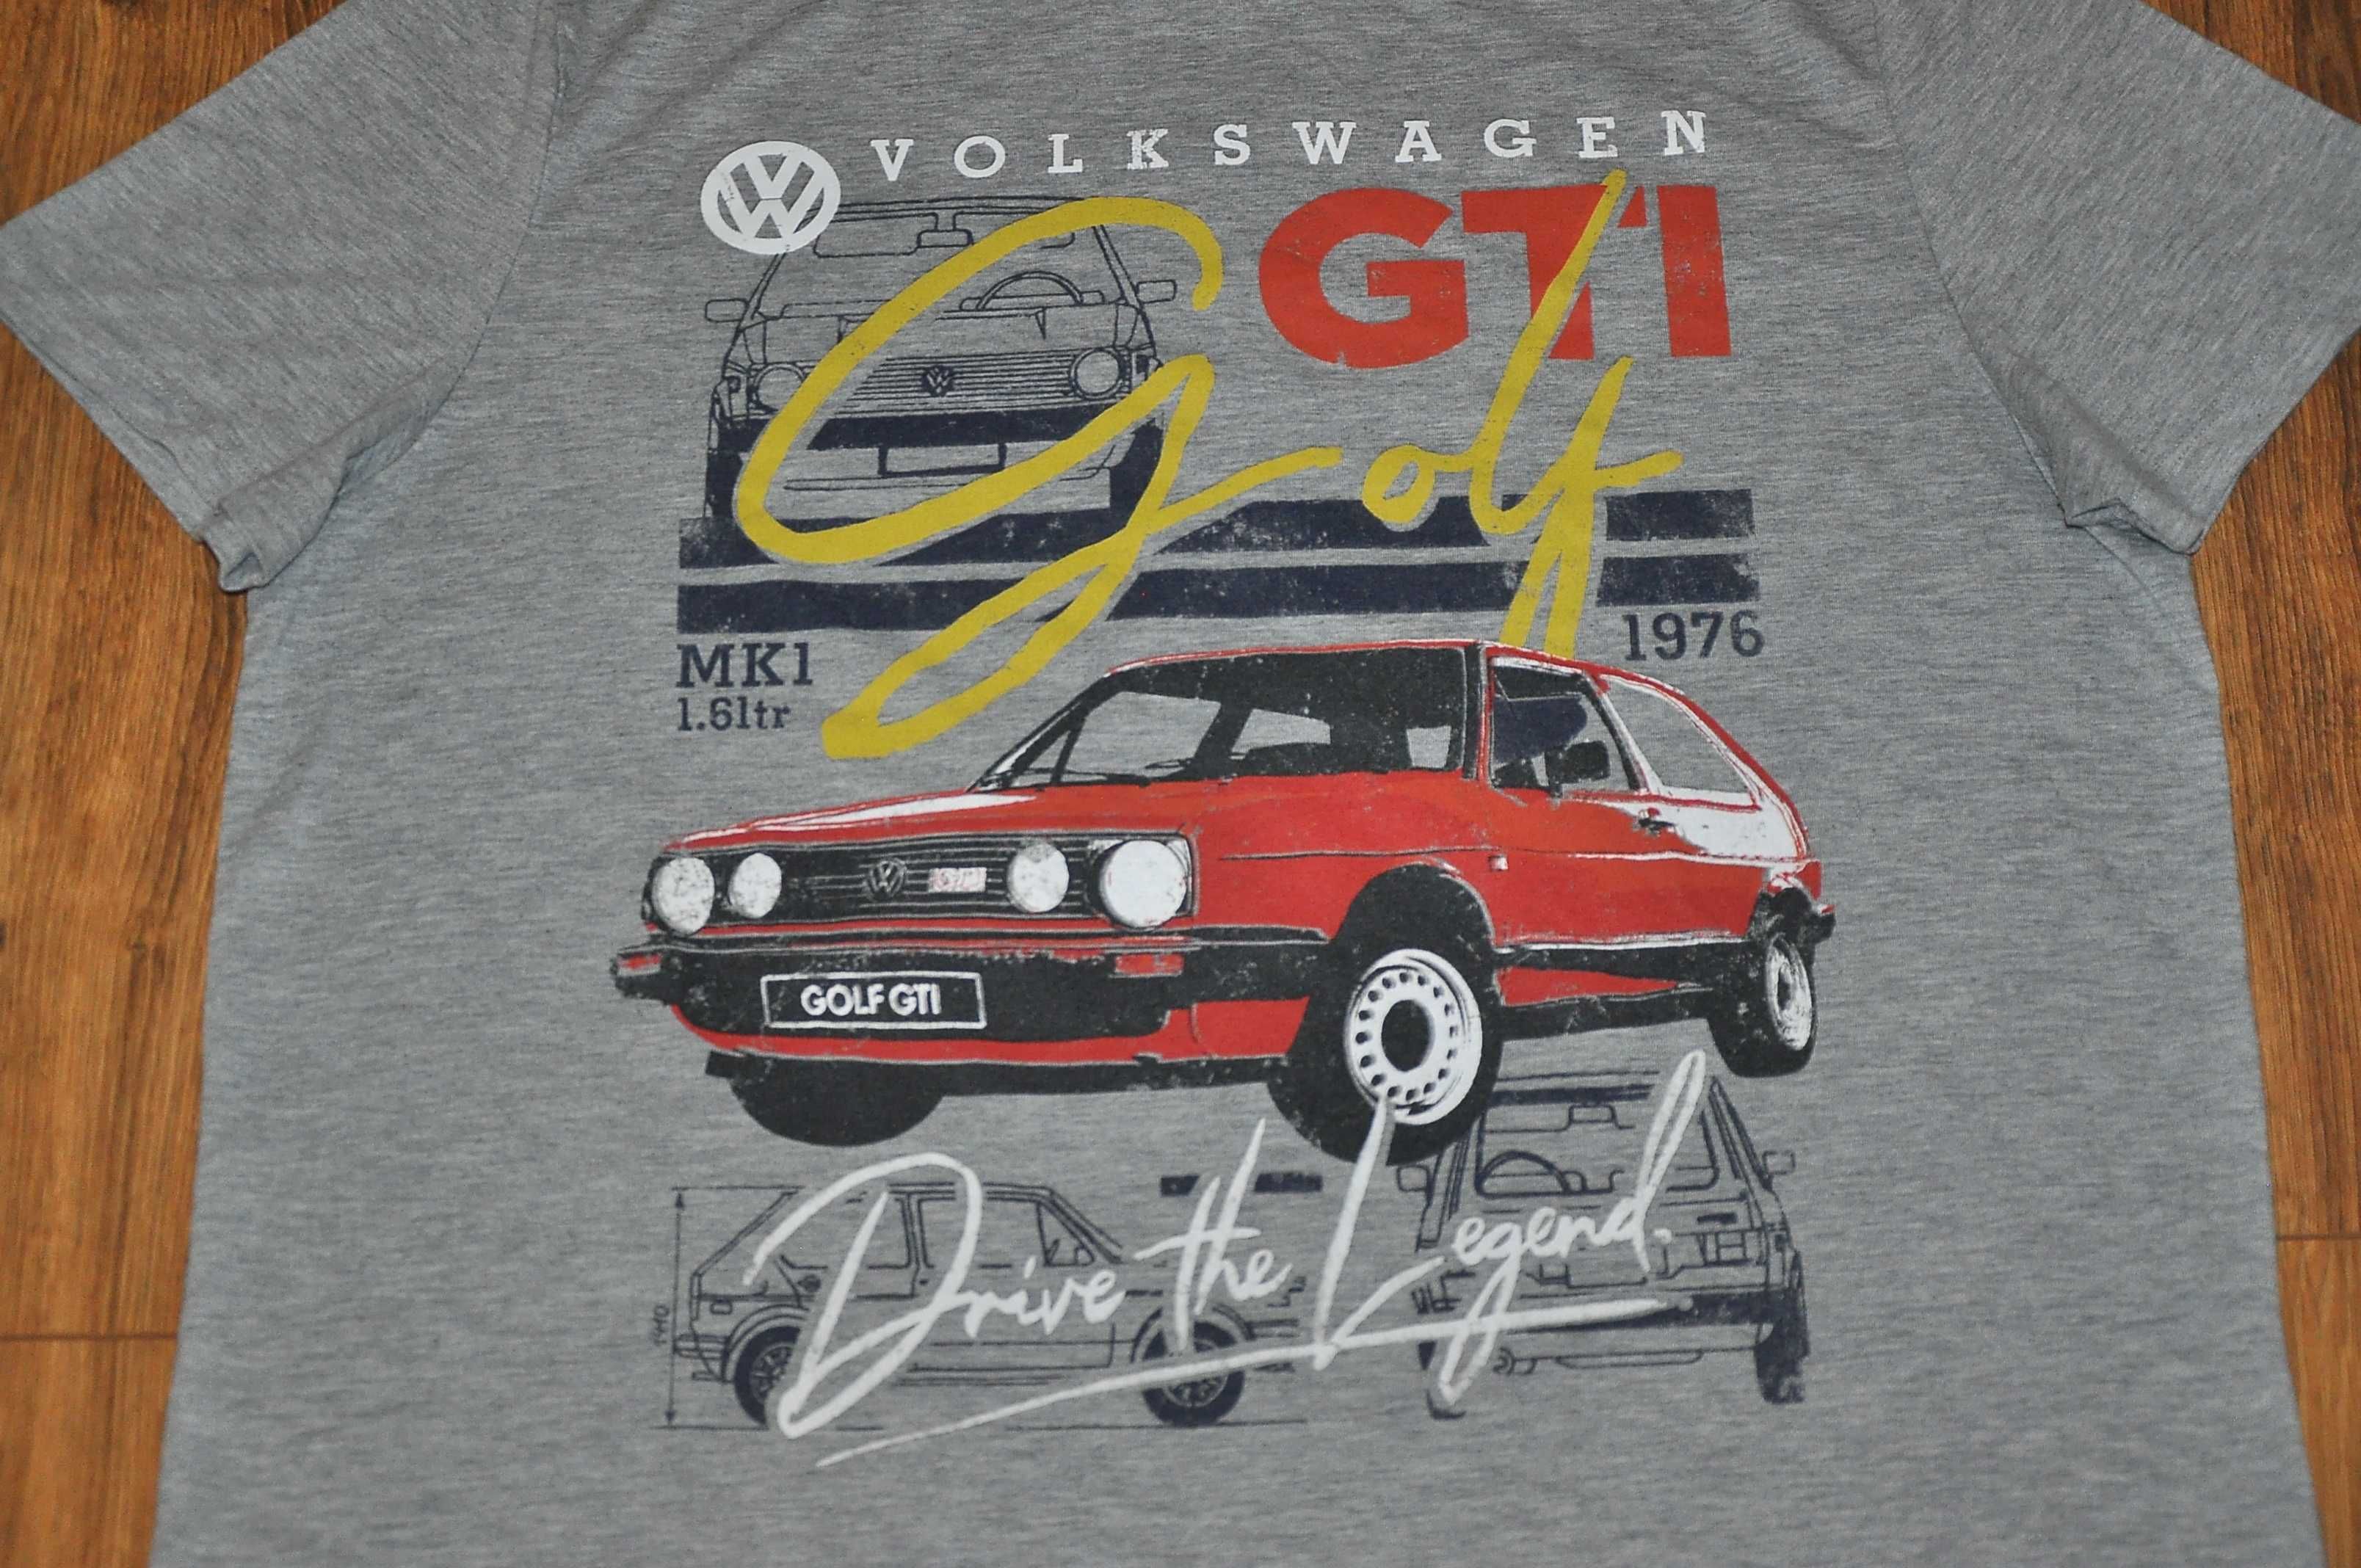 VOLKSWAGEN GOLF - Drive the Legend Gti Mk1 1976 - koszulka rozm.XL